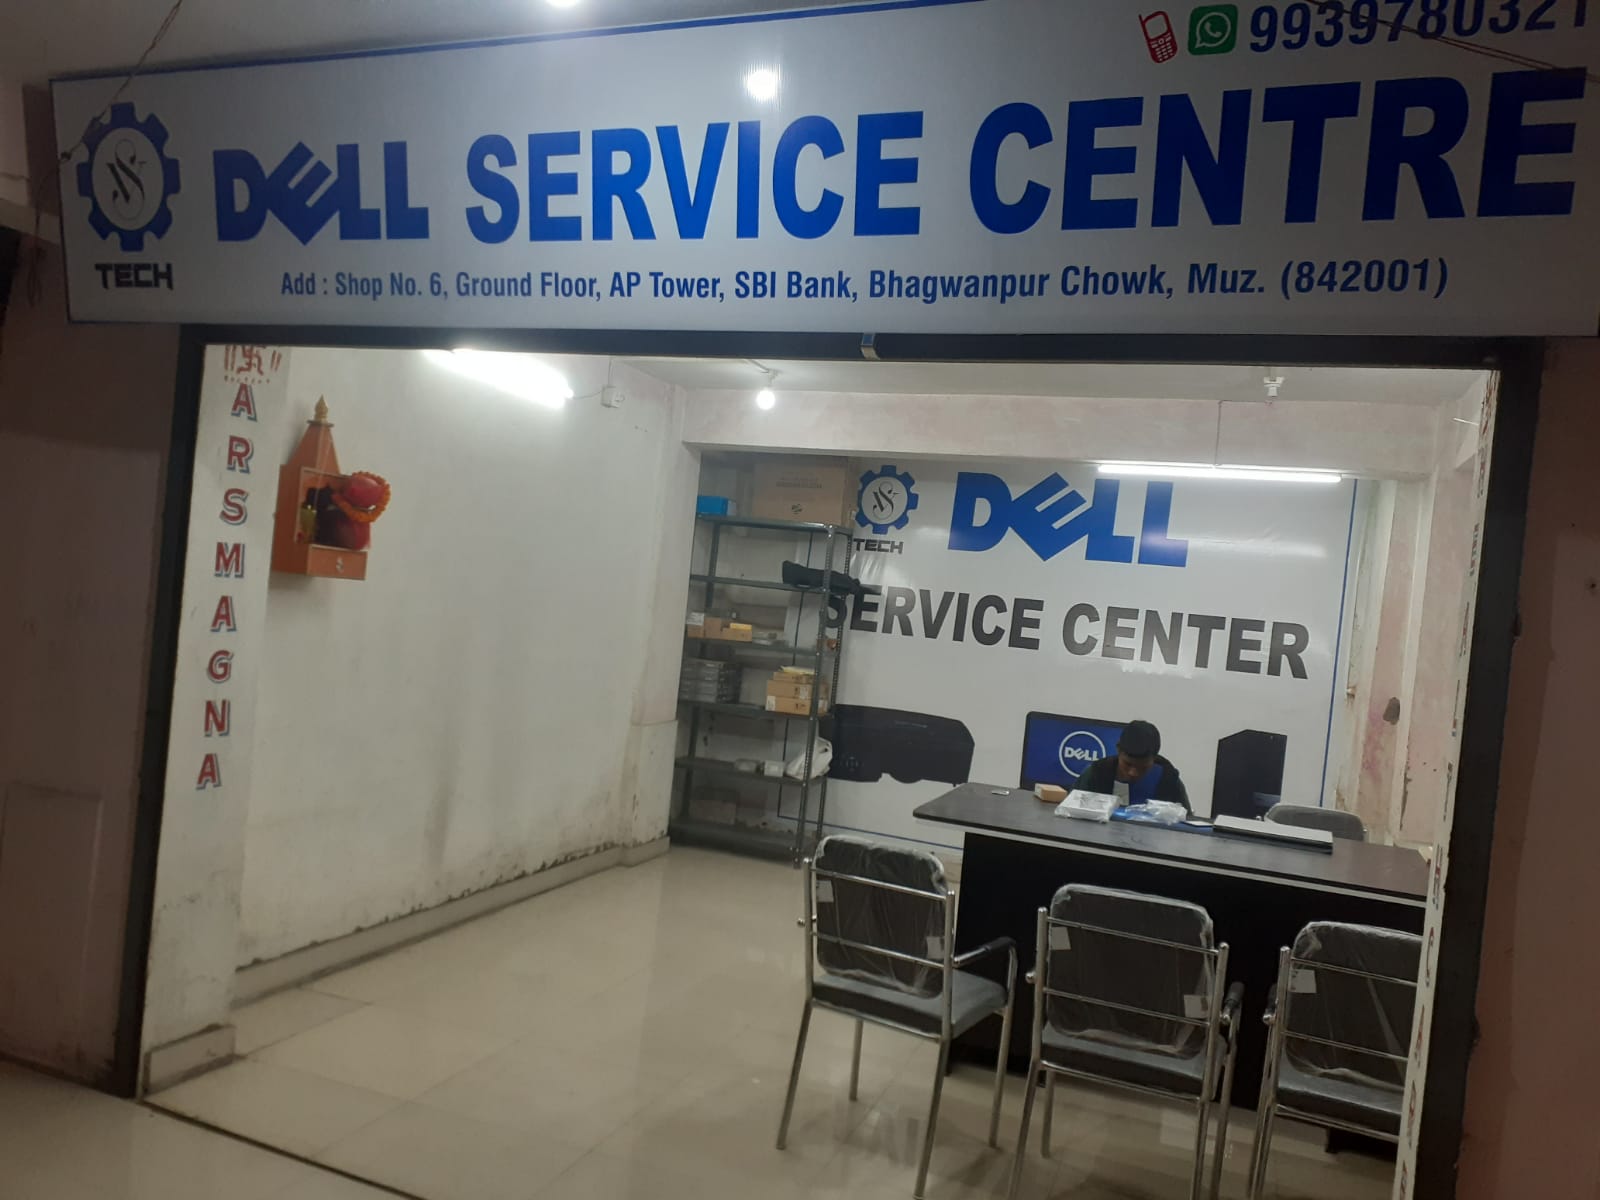 DELL SERVICE CENTER in Muzaffarpur